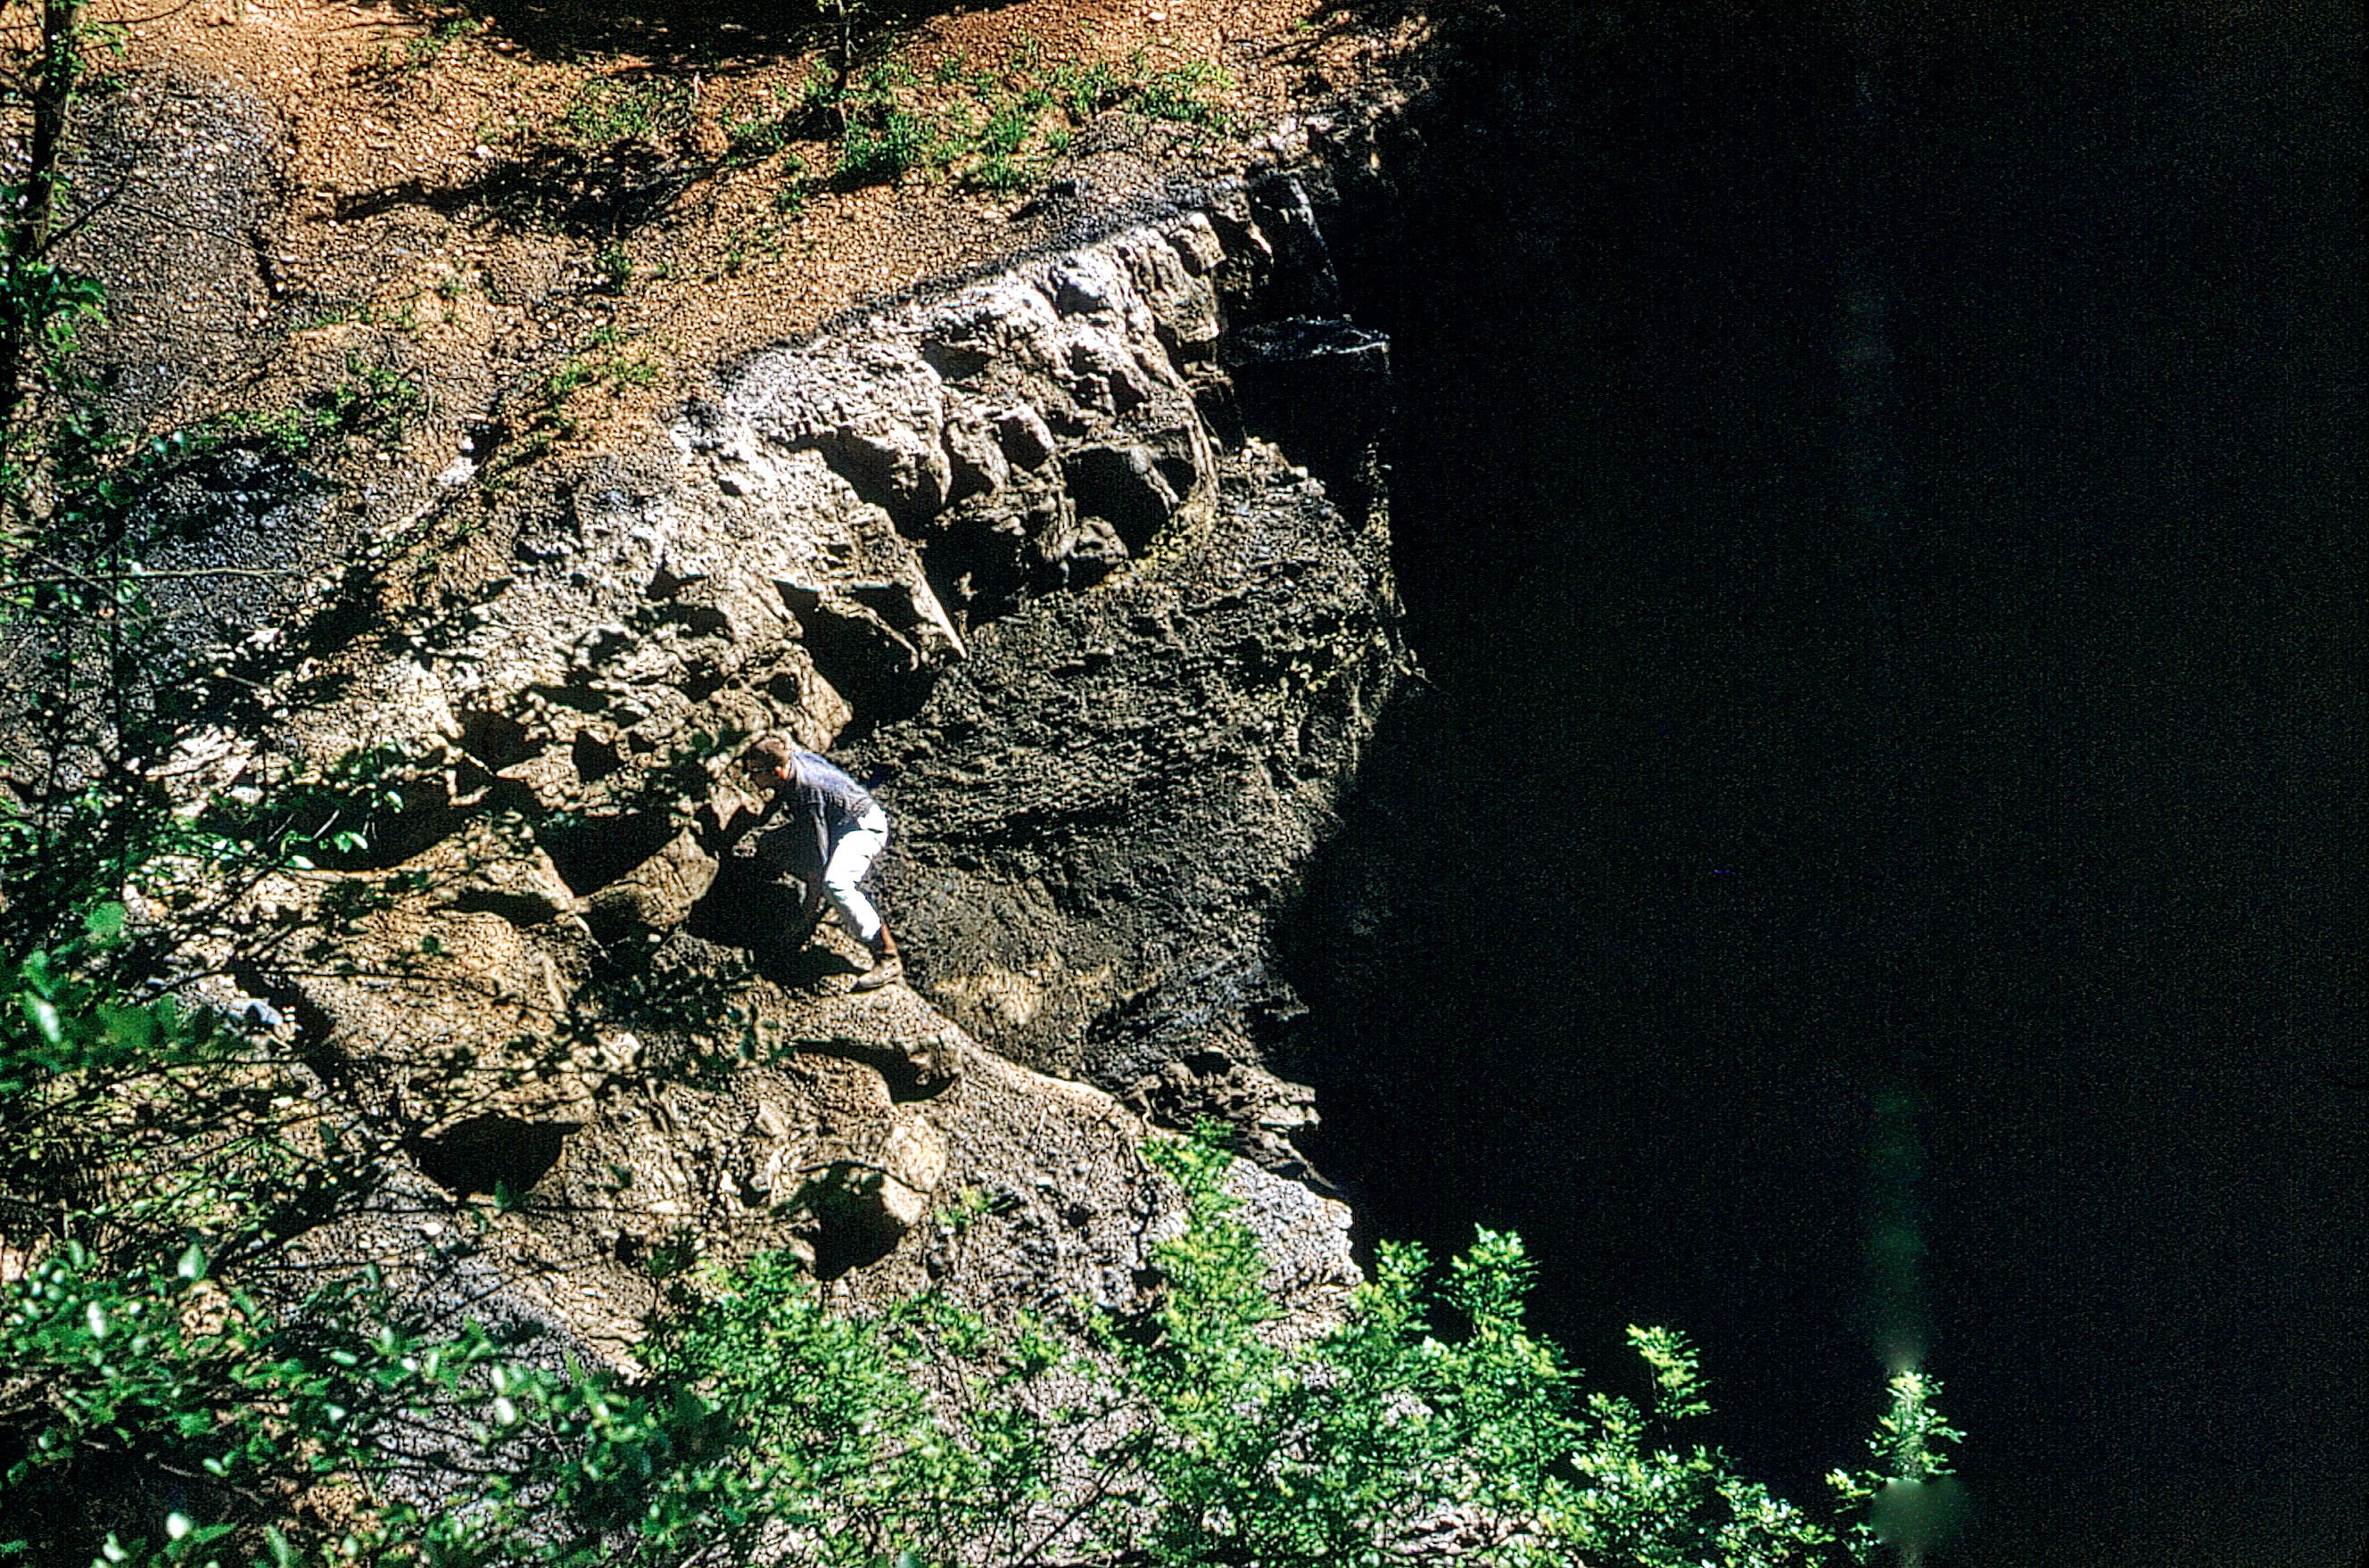 Sinkhole in coal-mined area near Weir, Cherokee County, 1962.